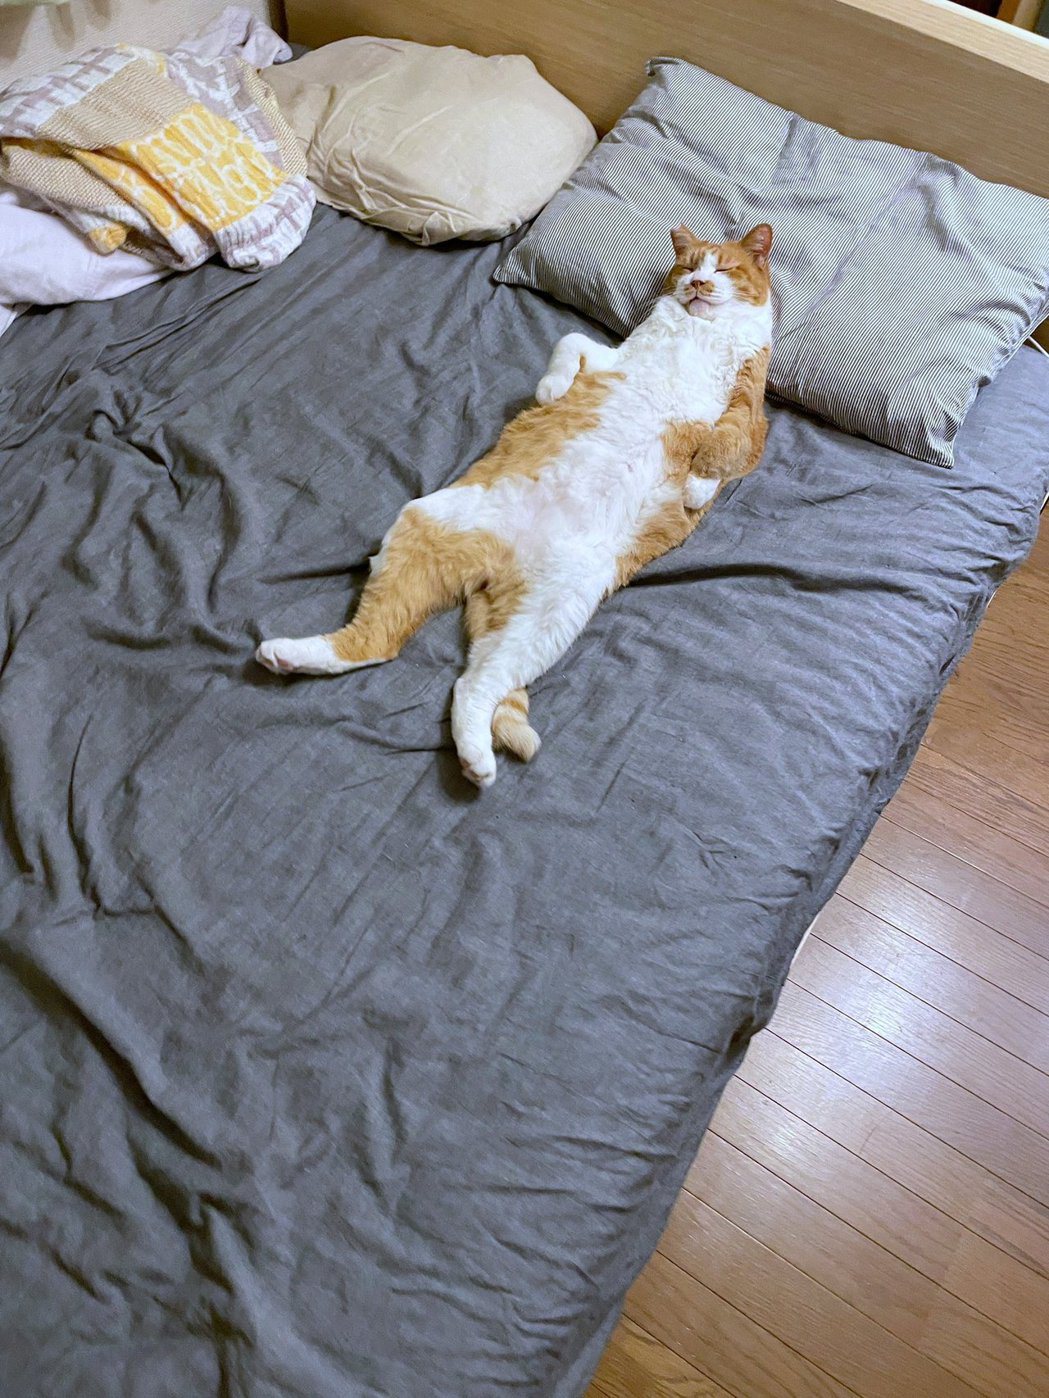 橘白貓瑪娜睡的相當舒適：換你睡在籠子裡。圖擷自@mitoconcon